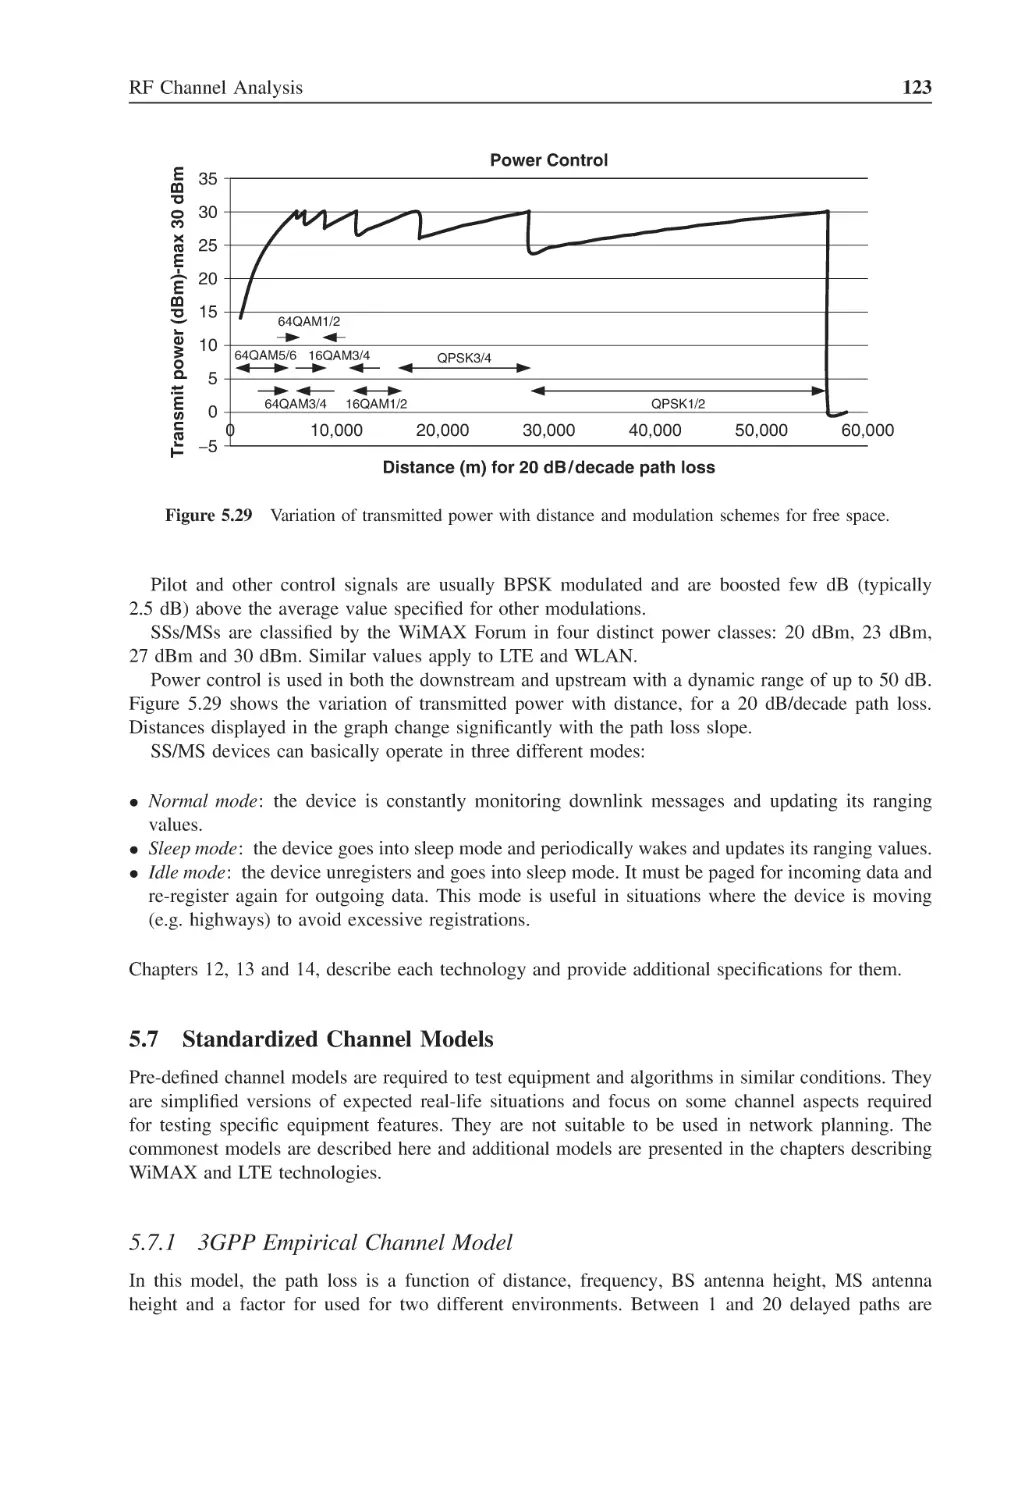 5.7 Standardized Channel Models
5.7.1 3GPP Empirical Channel Model